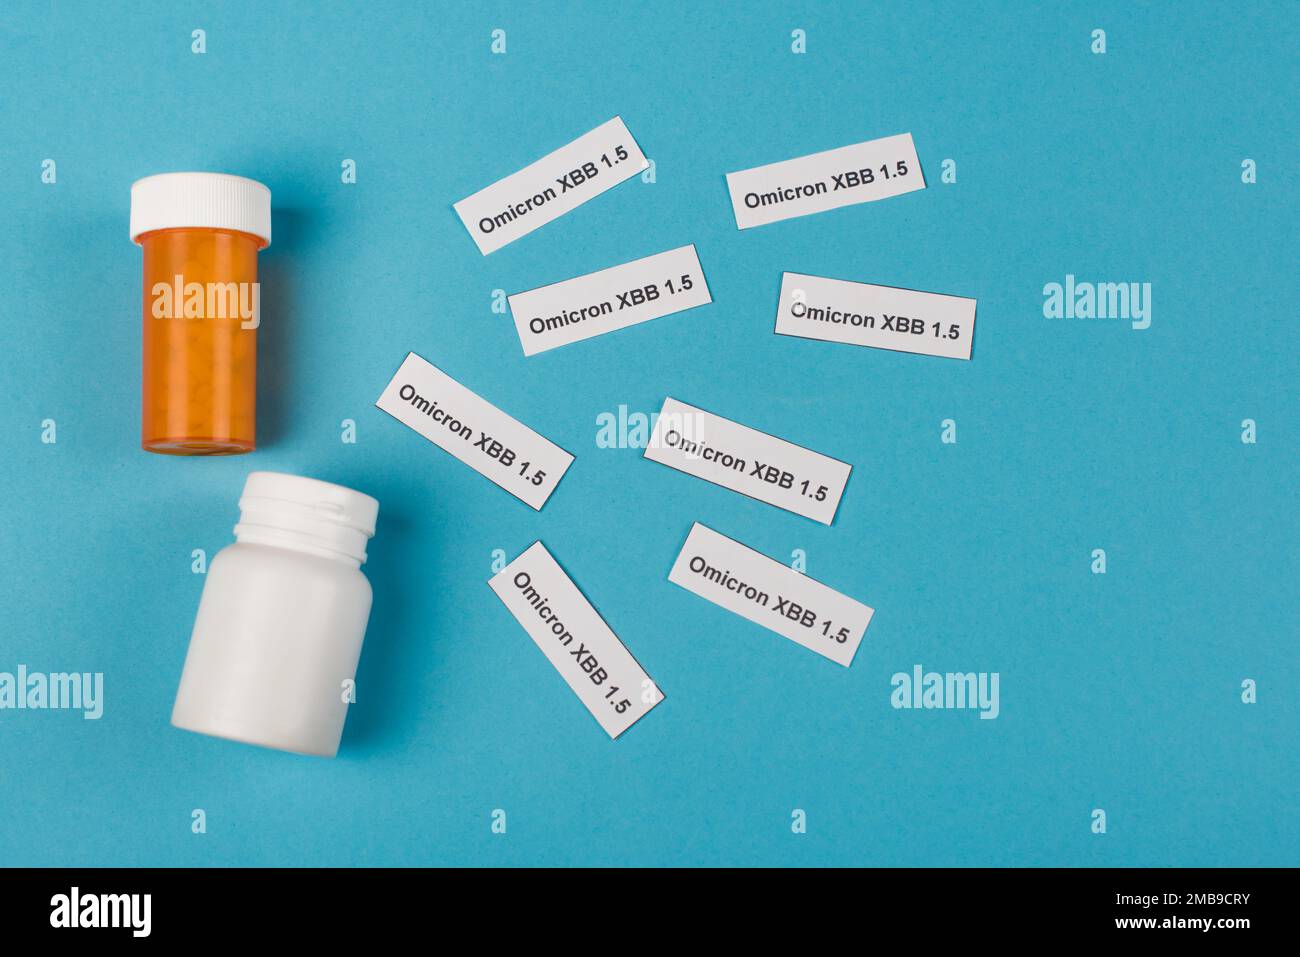 Vista dall'alto di pillole e scritta omicron xbb su sfondo blu, immagine stock Foto Stock